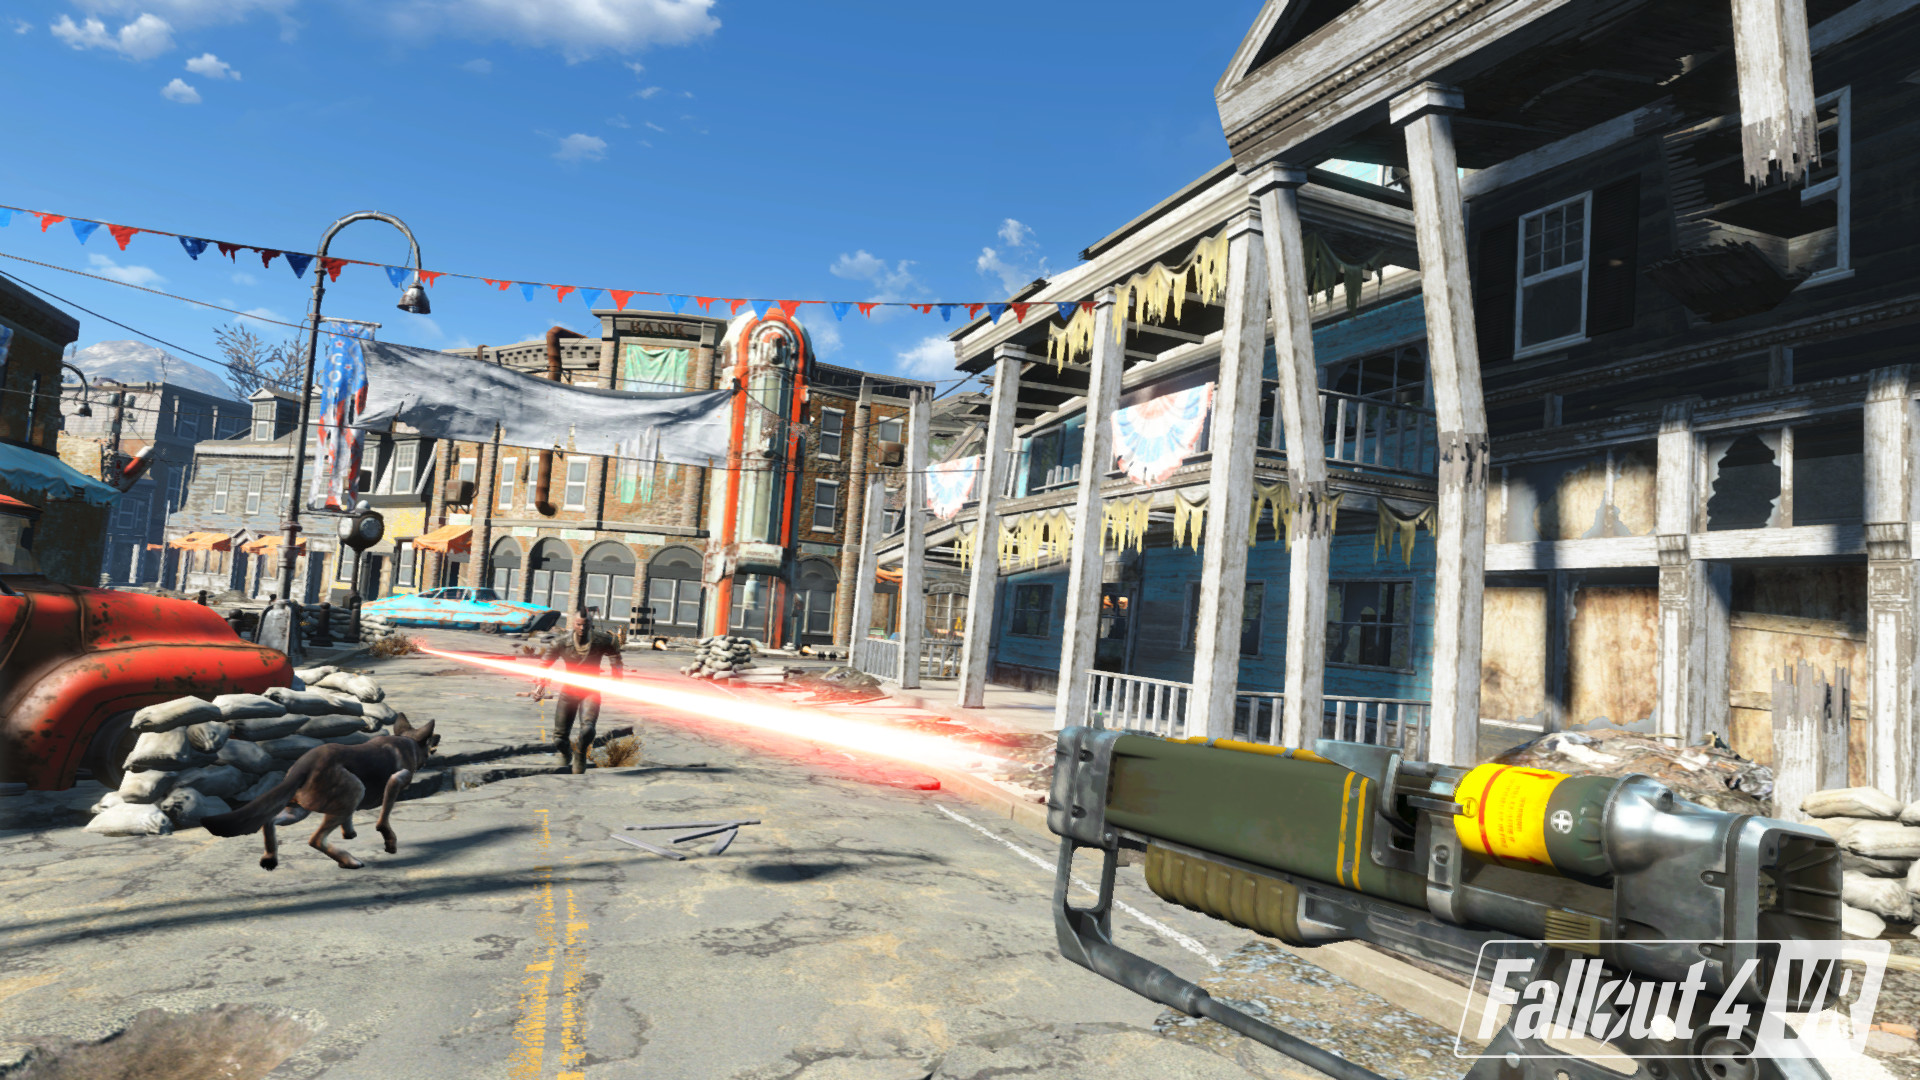 辐射4VR（Fallout 4 VR）HTC VIVE